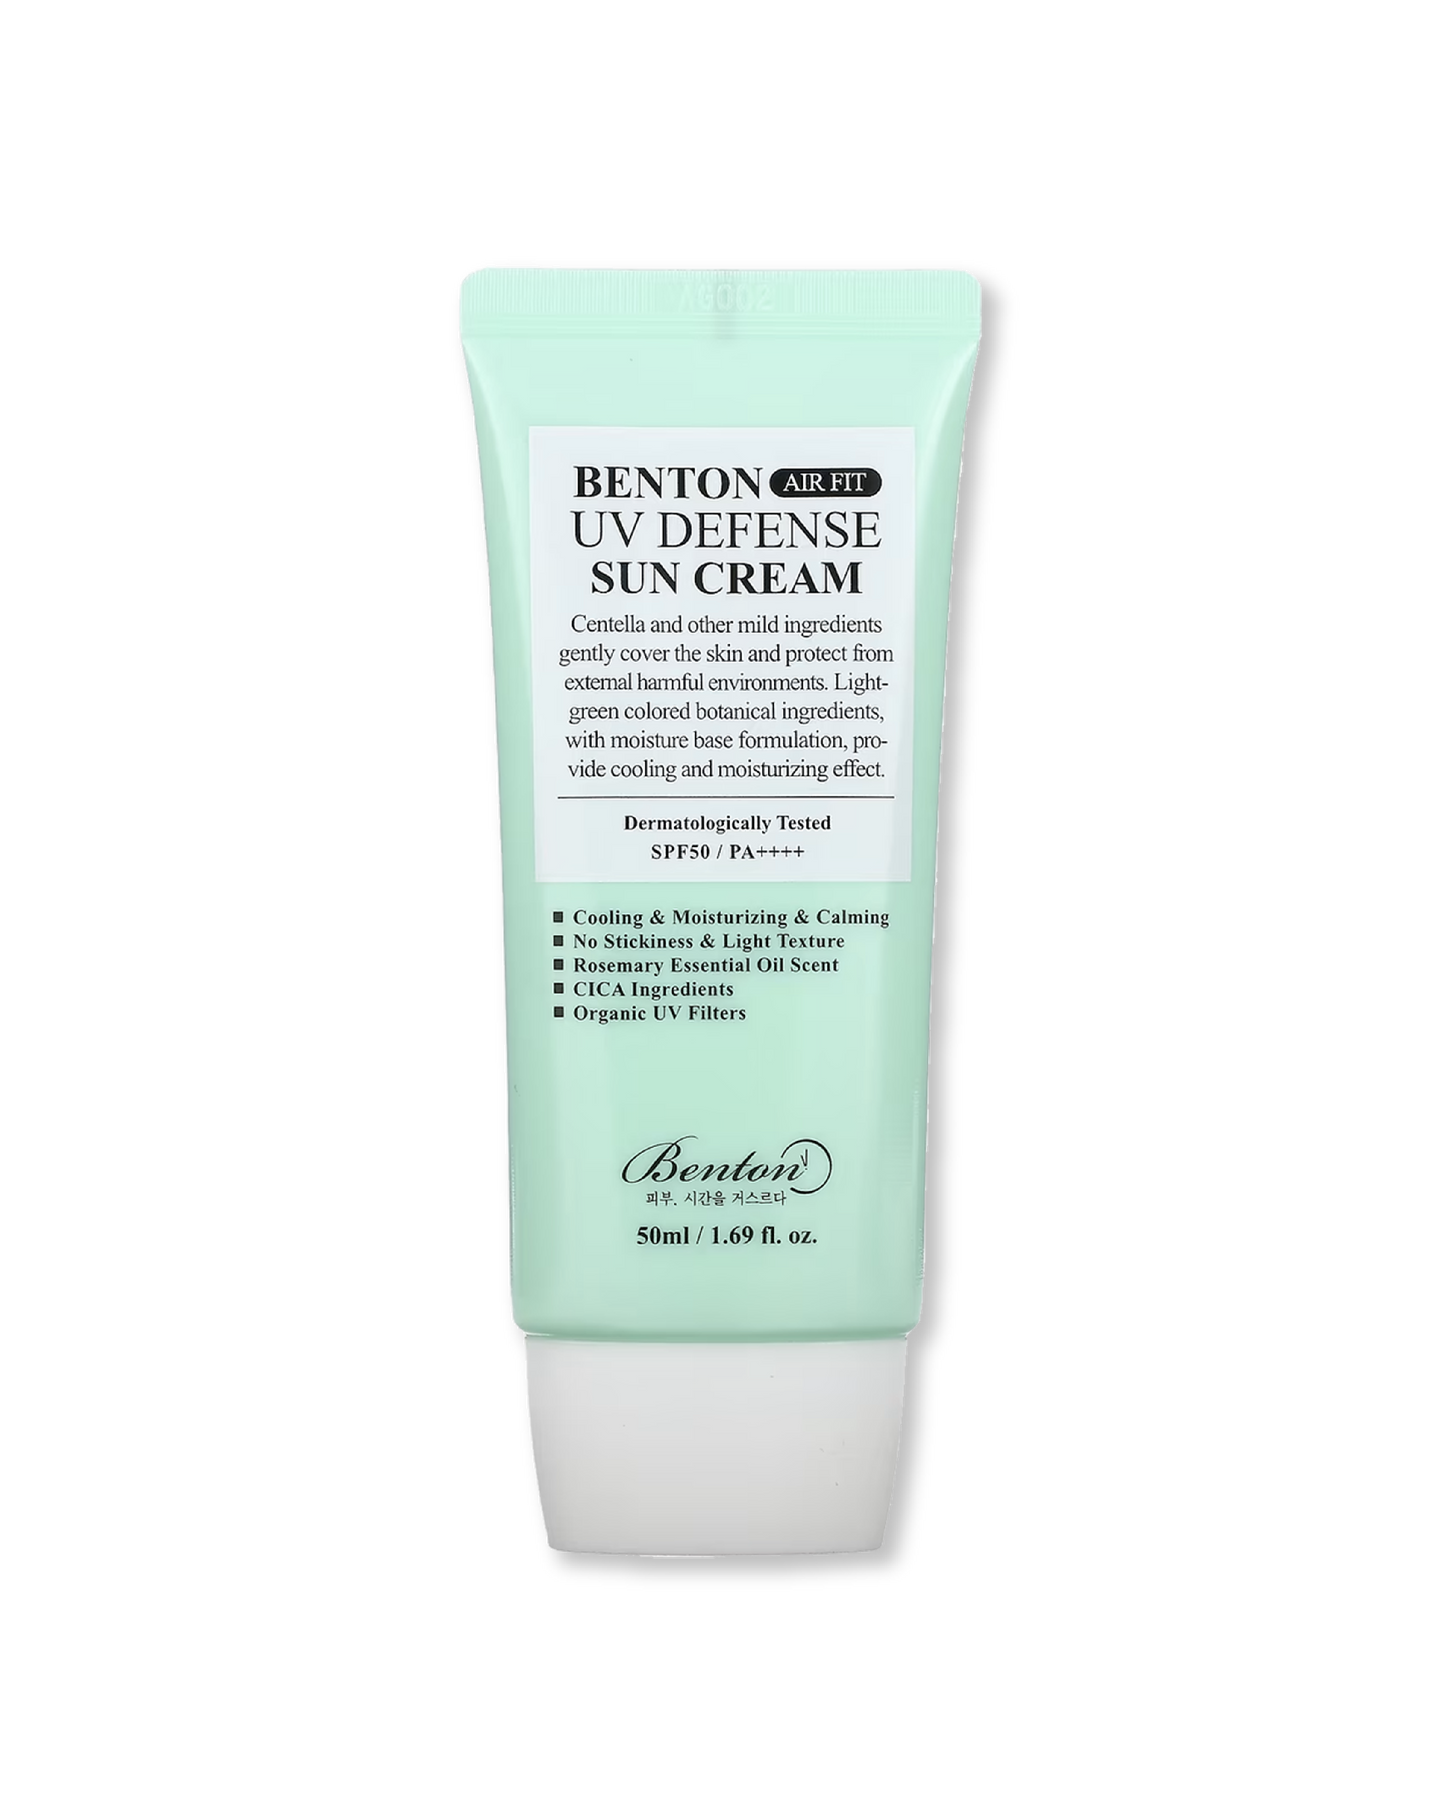 BENTON Air Fit UV Defense Sun Cream